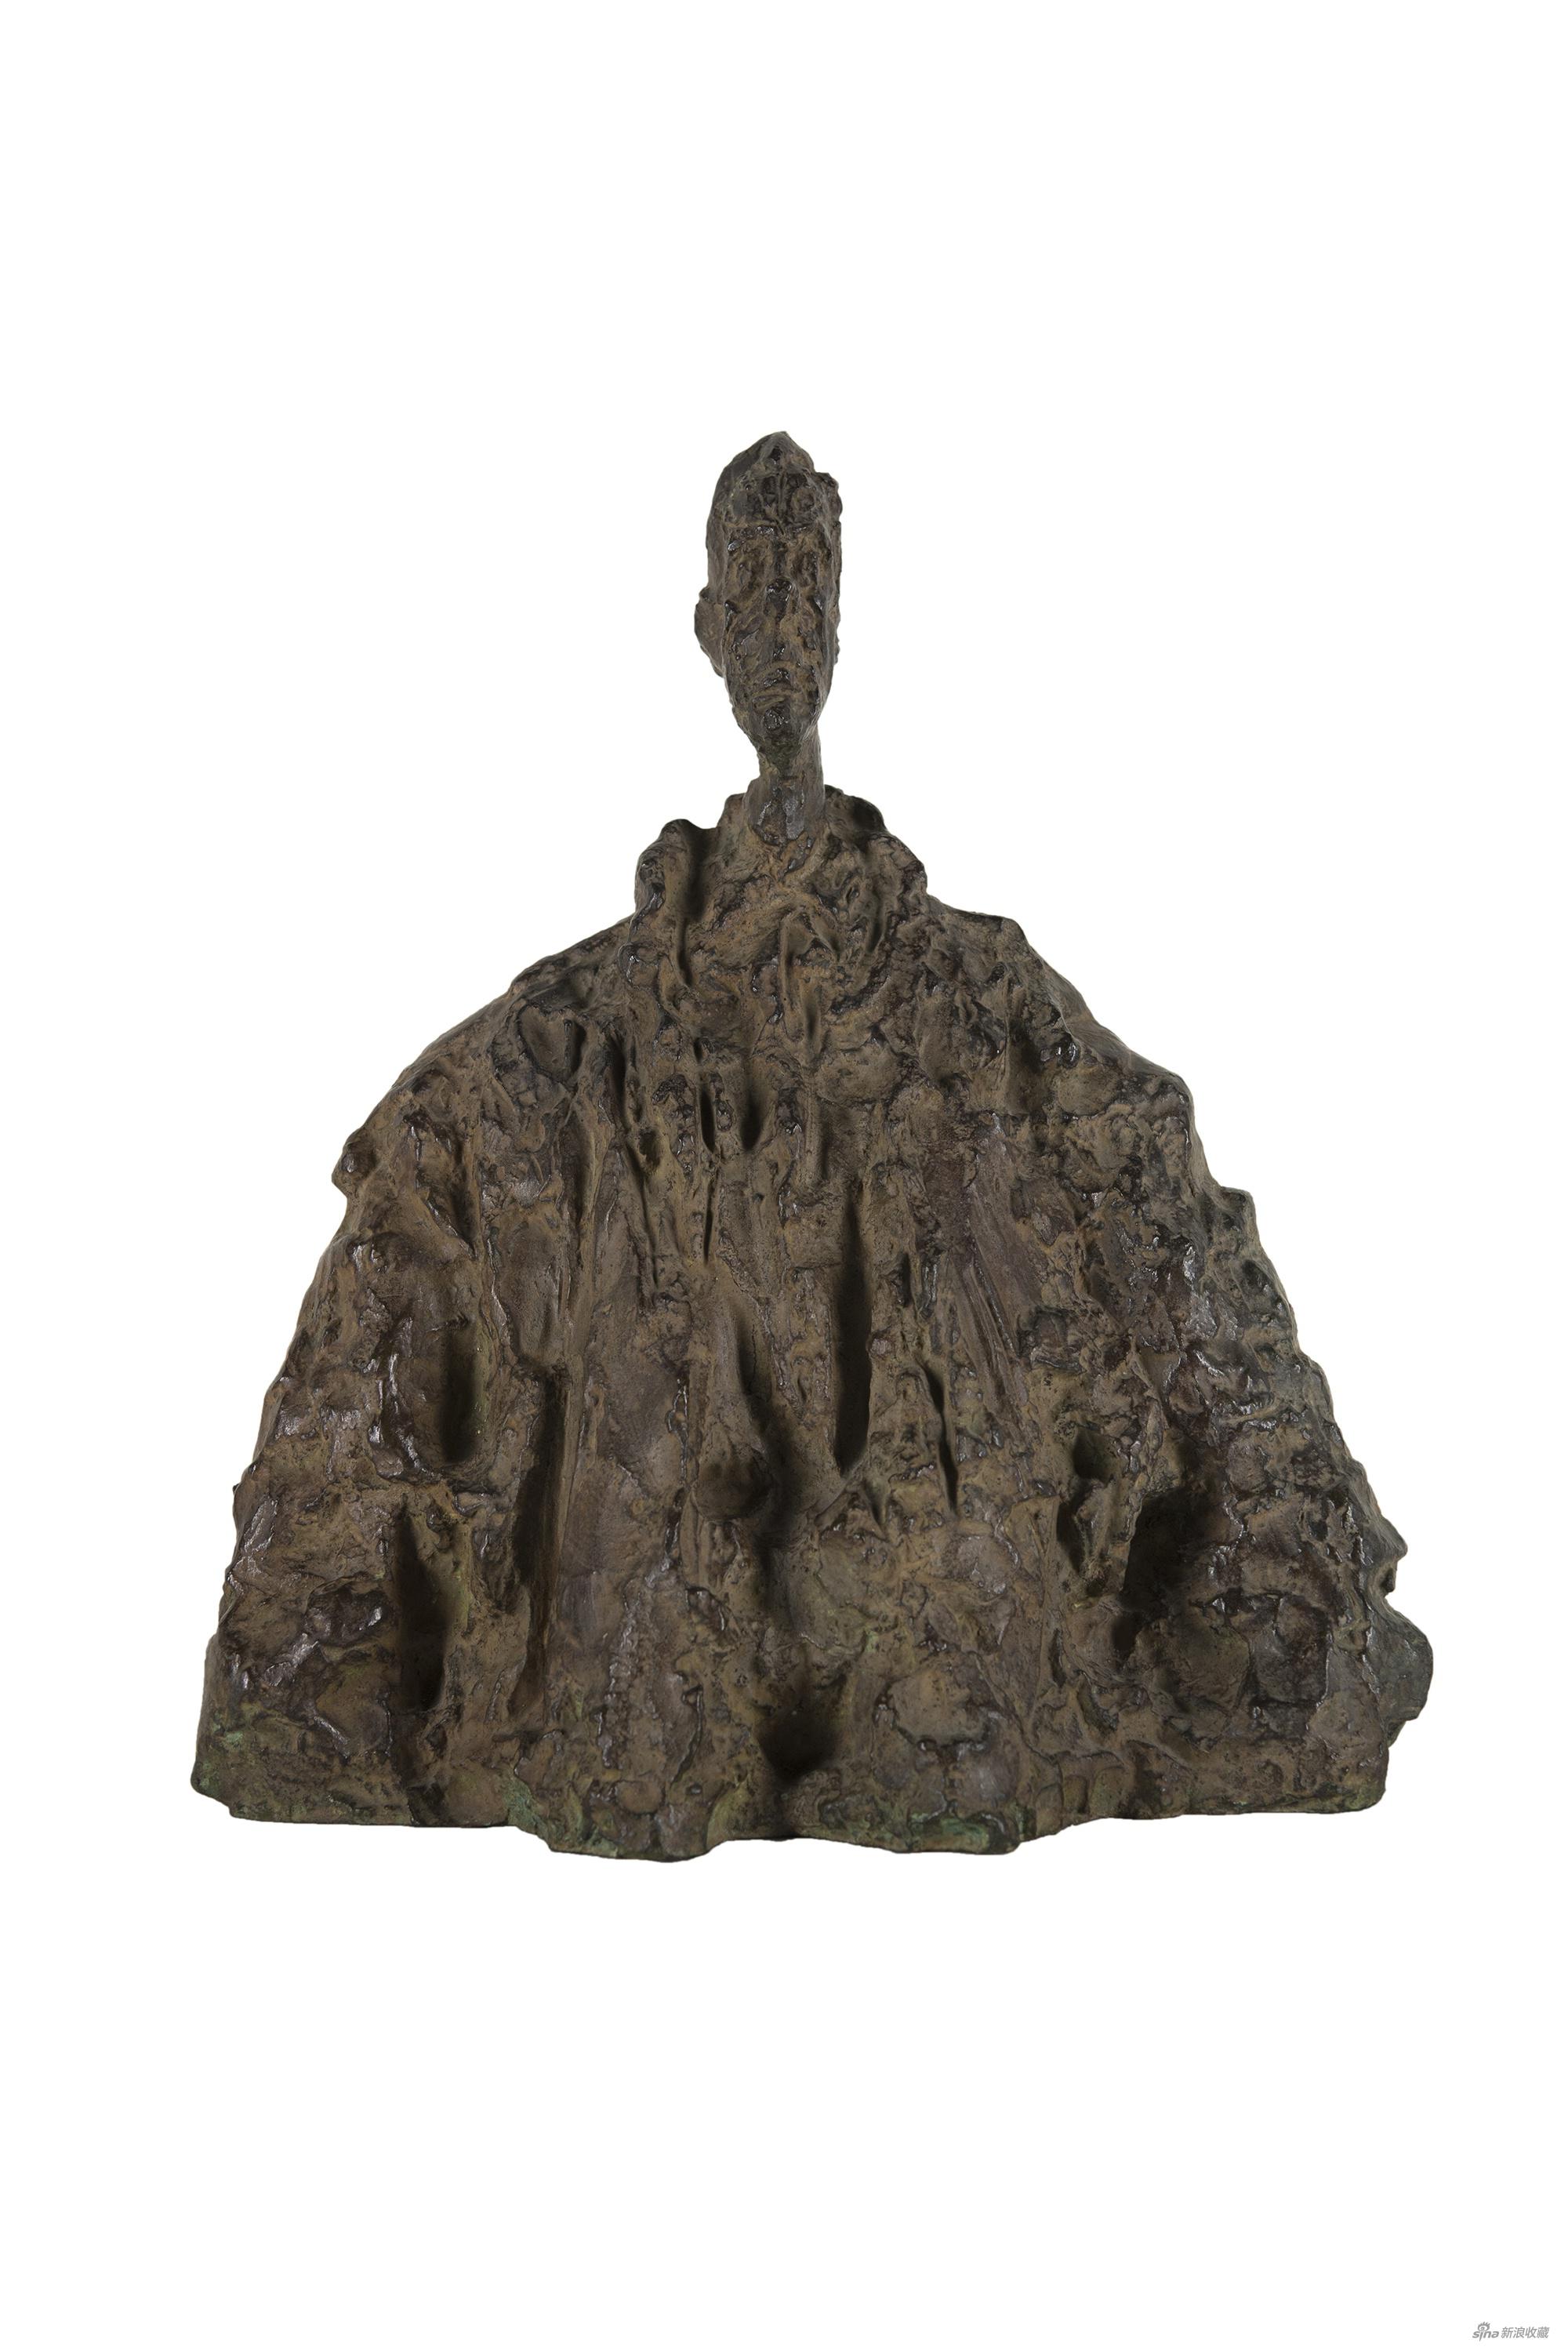 　　穿斗篷的迭戈Diego au Manteau-阿尔贝托·贾科梅蒂Alberto Giacometti-青铜雕塑 Sculpture in bronze-38.1×34.5×22.3cm-1954年创作